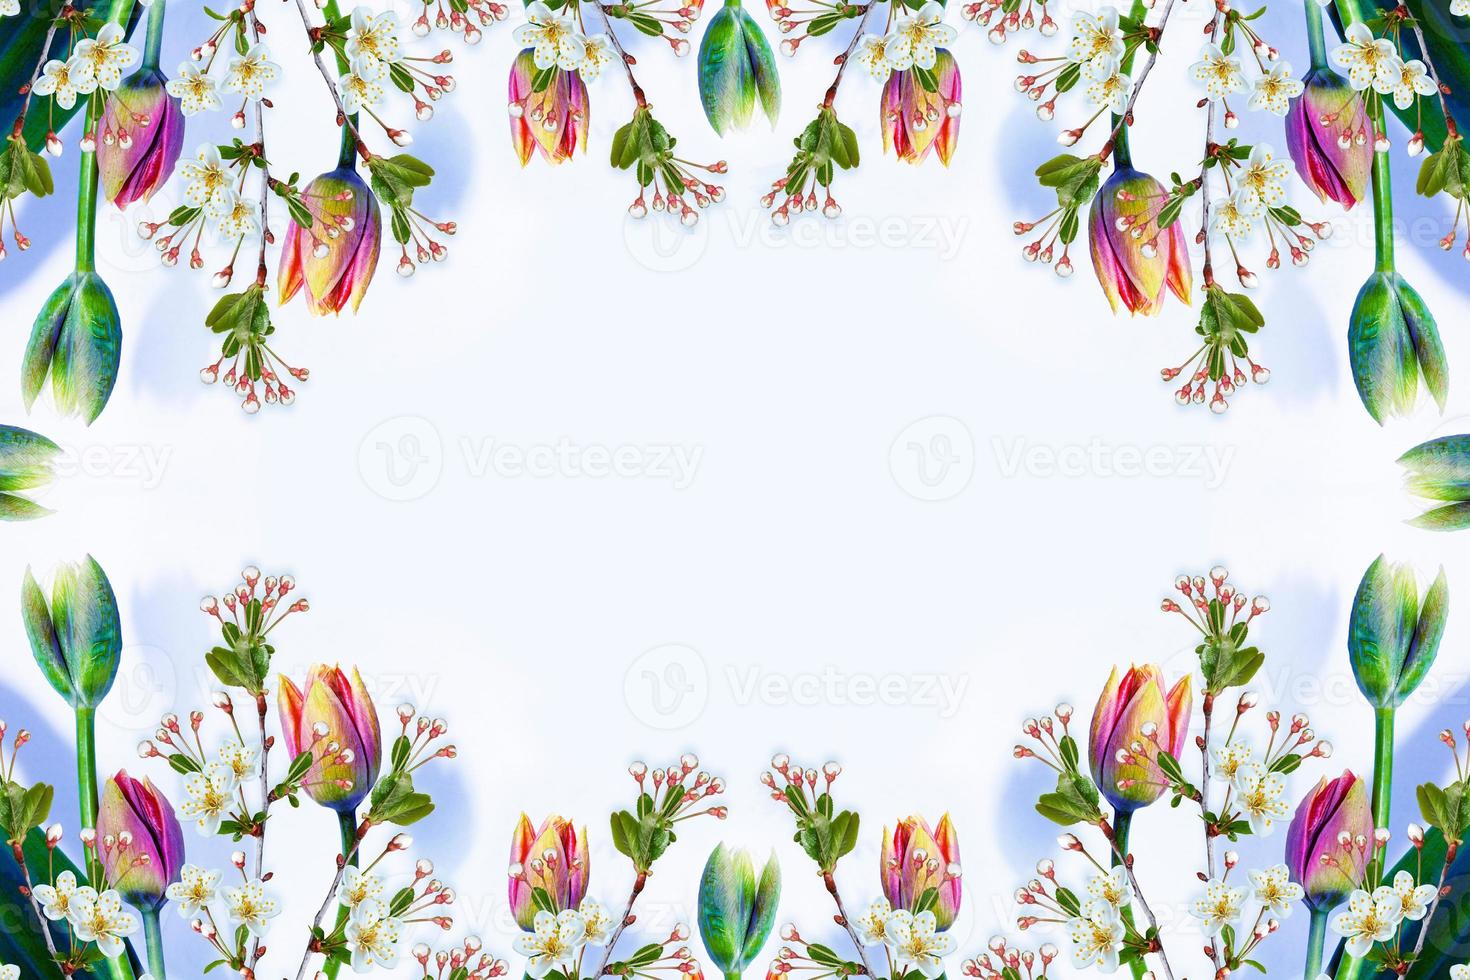 maçã de ramo florescendo, tulipas. flores coloridas brilhantes da primavera foto